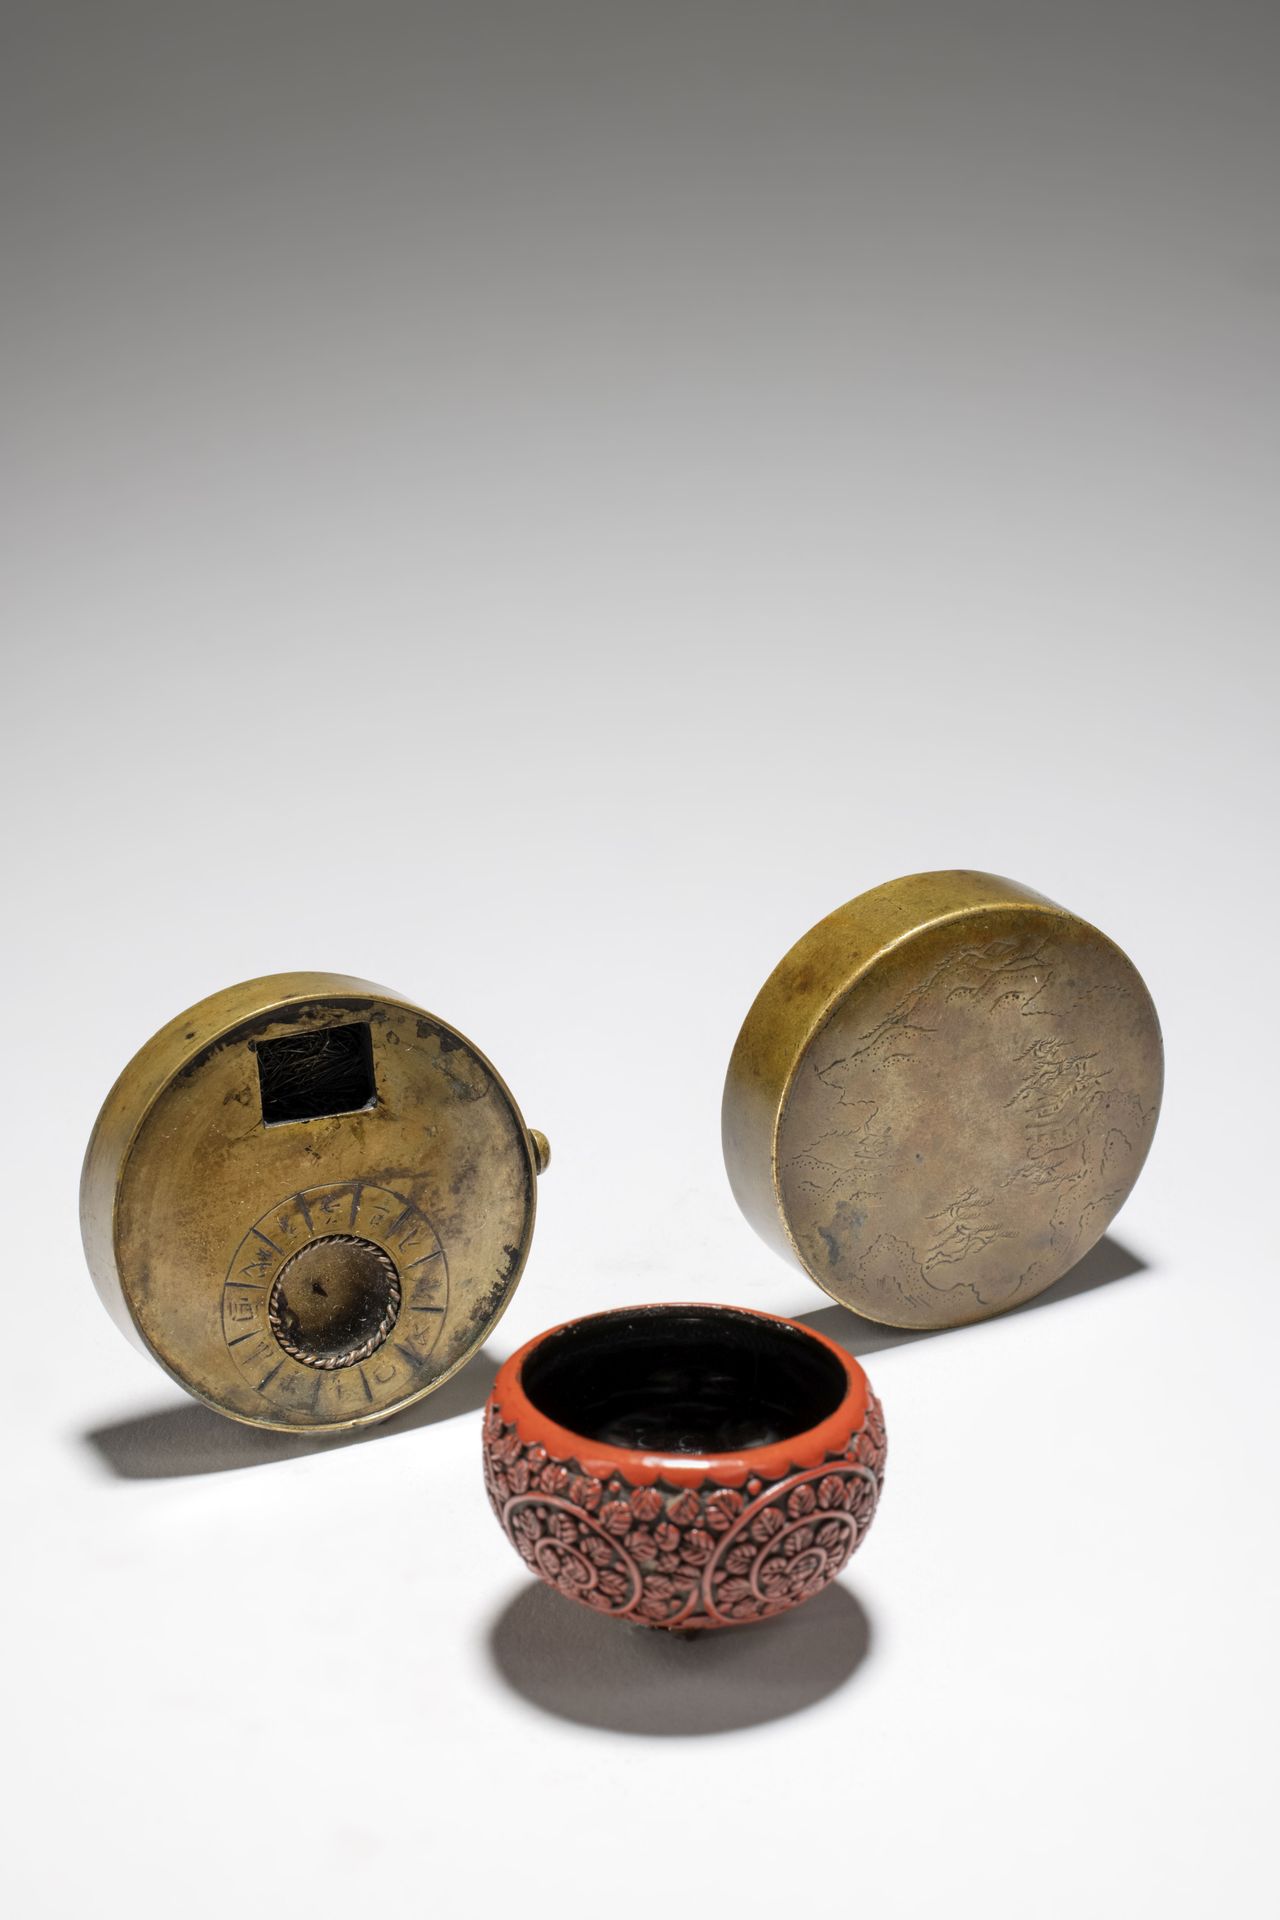 Null 网状漆器烟灰缸和金属怀表
19世纪
漆器烟灰缸和金属怀表
19世纪

内阁风格的净介，红漆的外表雕刻着植物的图案，3.8厘米（1.5英寸）直径；怀表是&hellip;